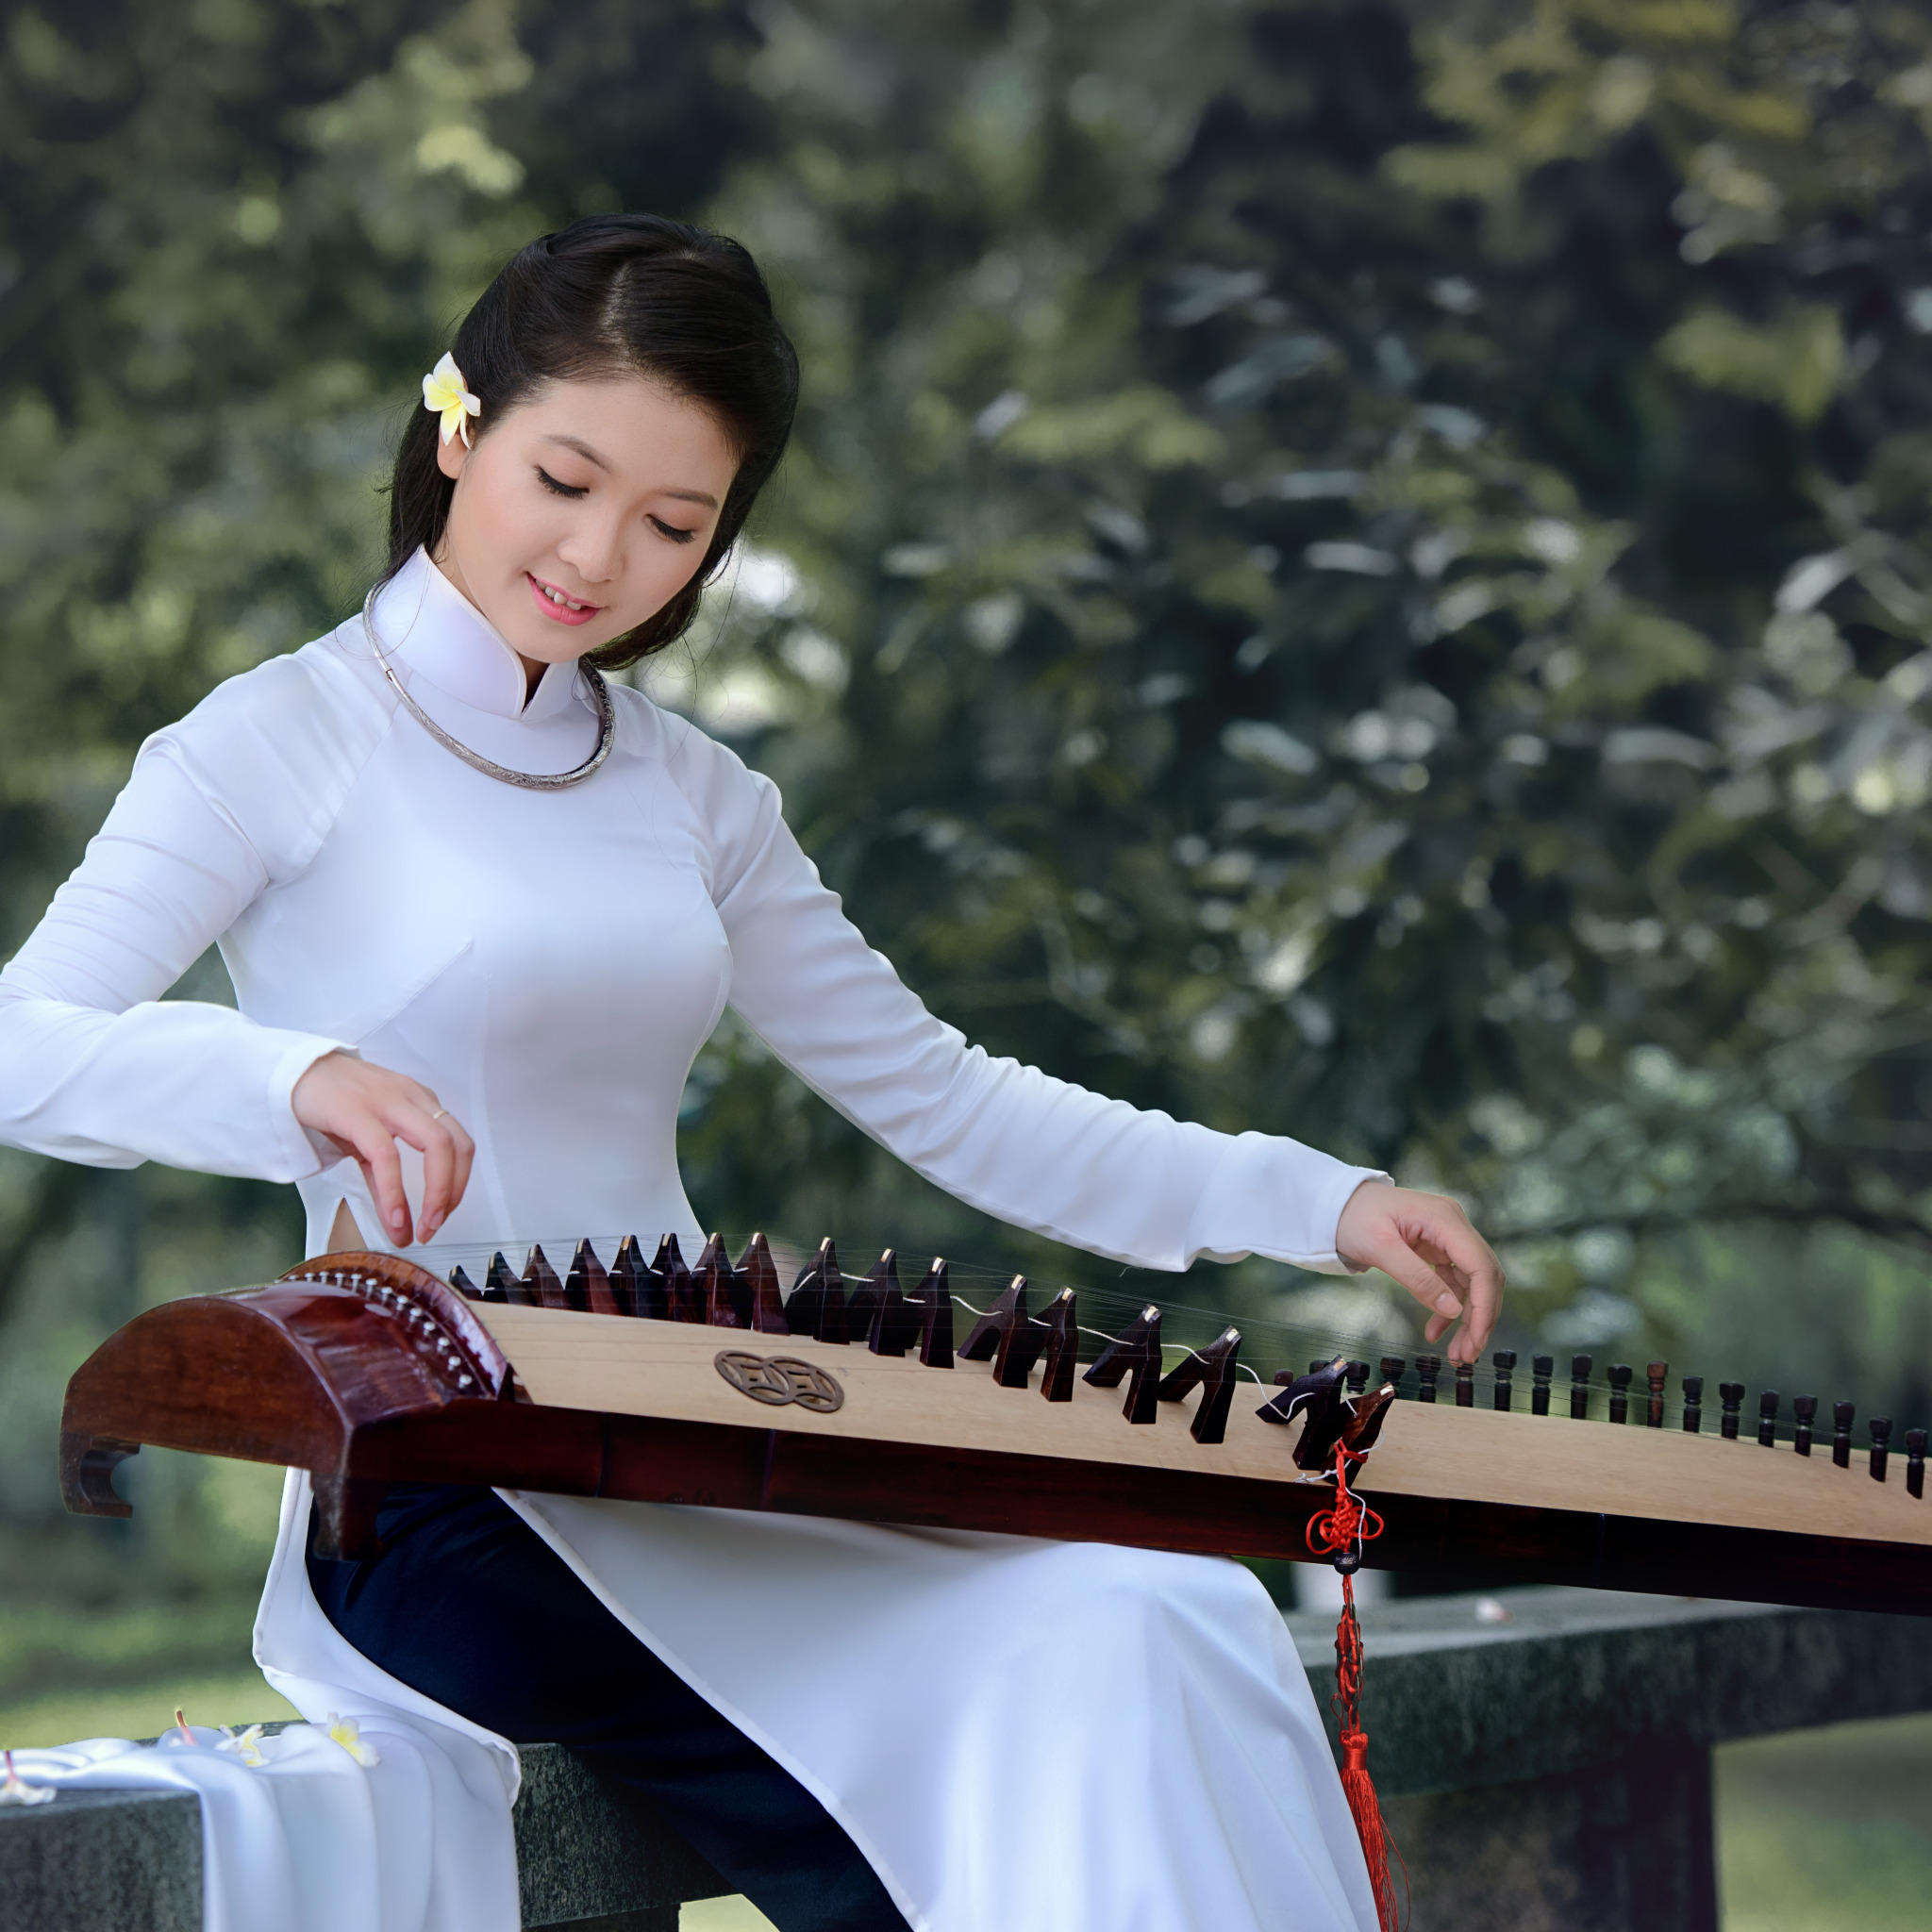 Asia music. Китаянка с музыкальным инструментом. Девушка в платье и музыкальный инструмент. Китайские девушки с инструментом музыкальным. Платье с музыкальными инструментами.